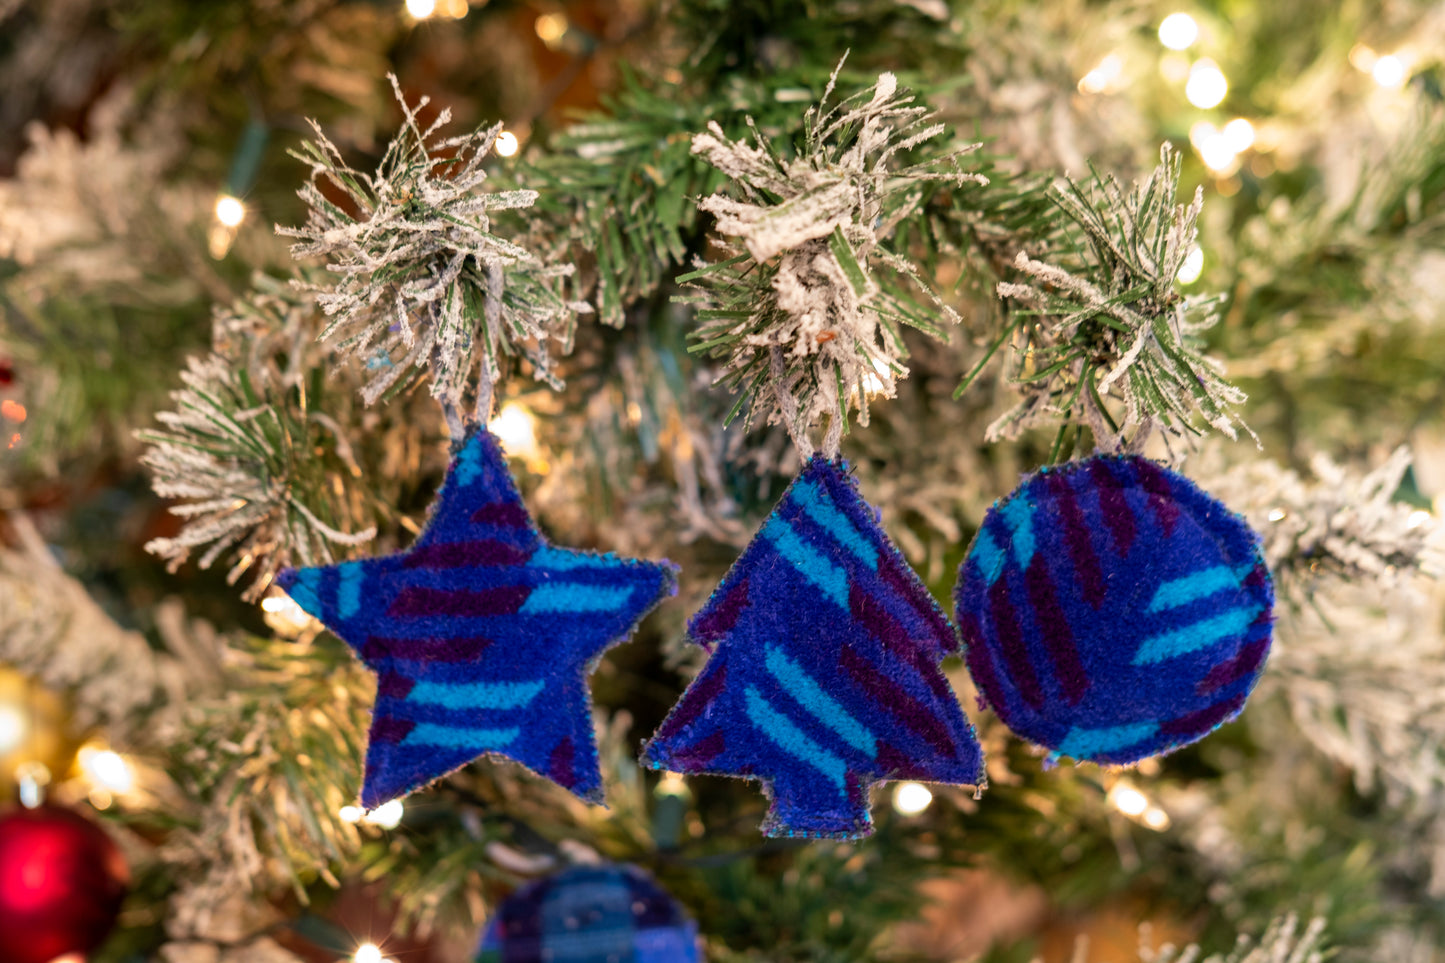 British Rail Blue Blaze Moquette Christmas Decoration Collection (blaize blue)